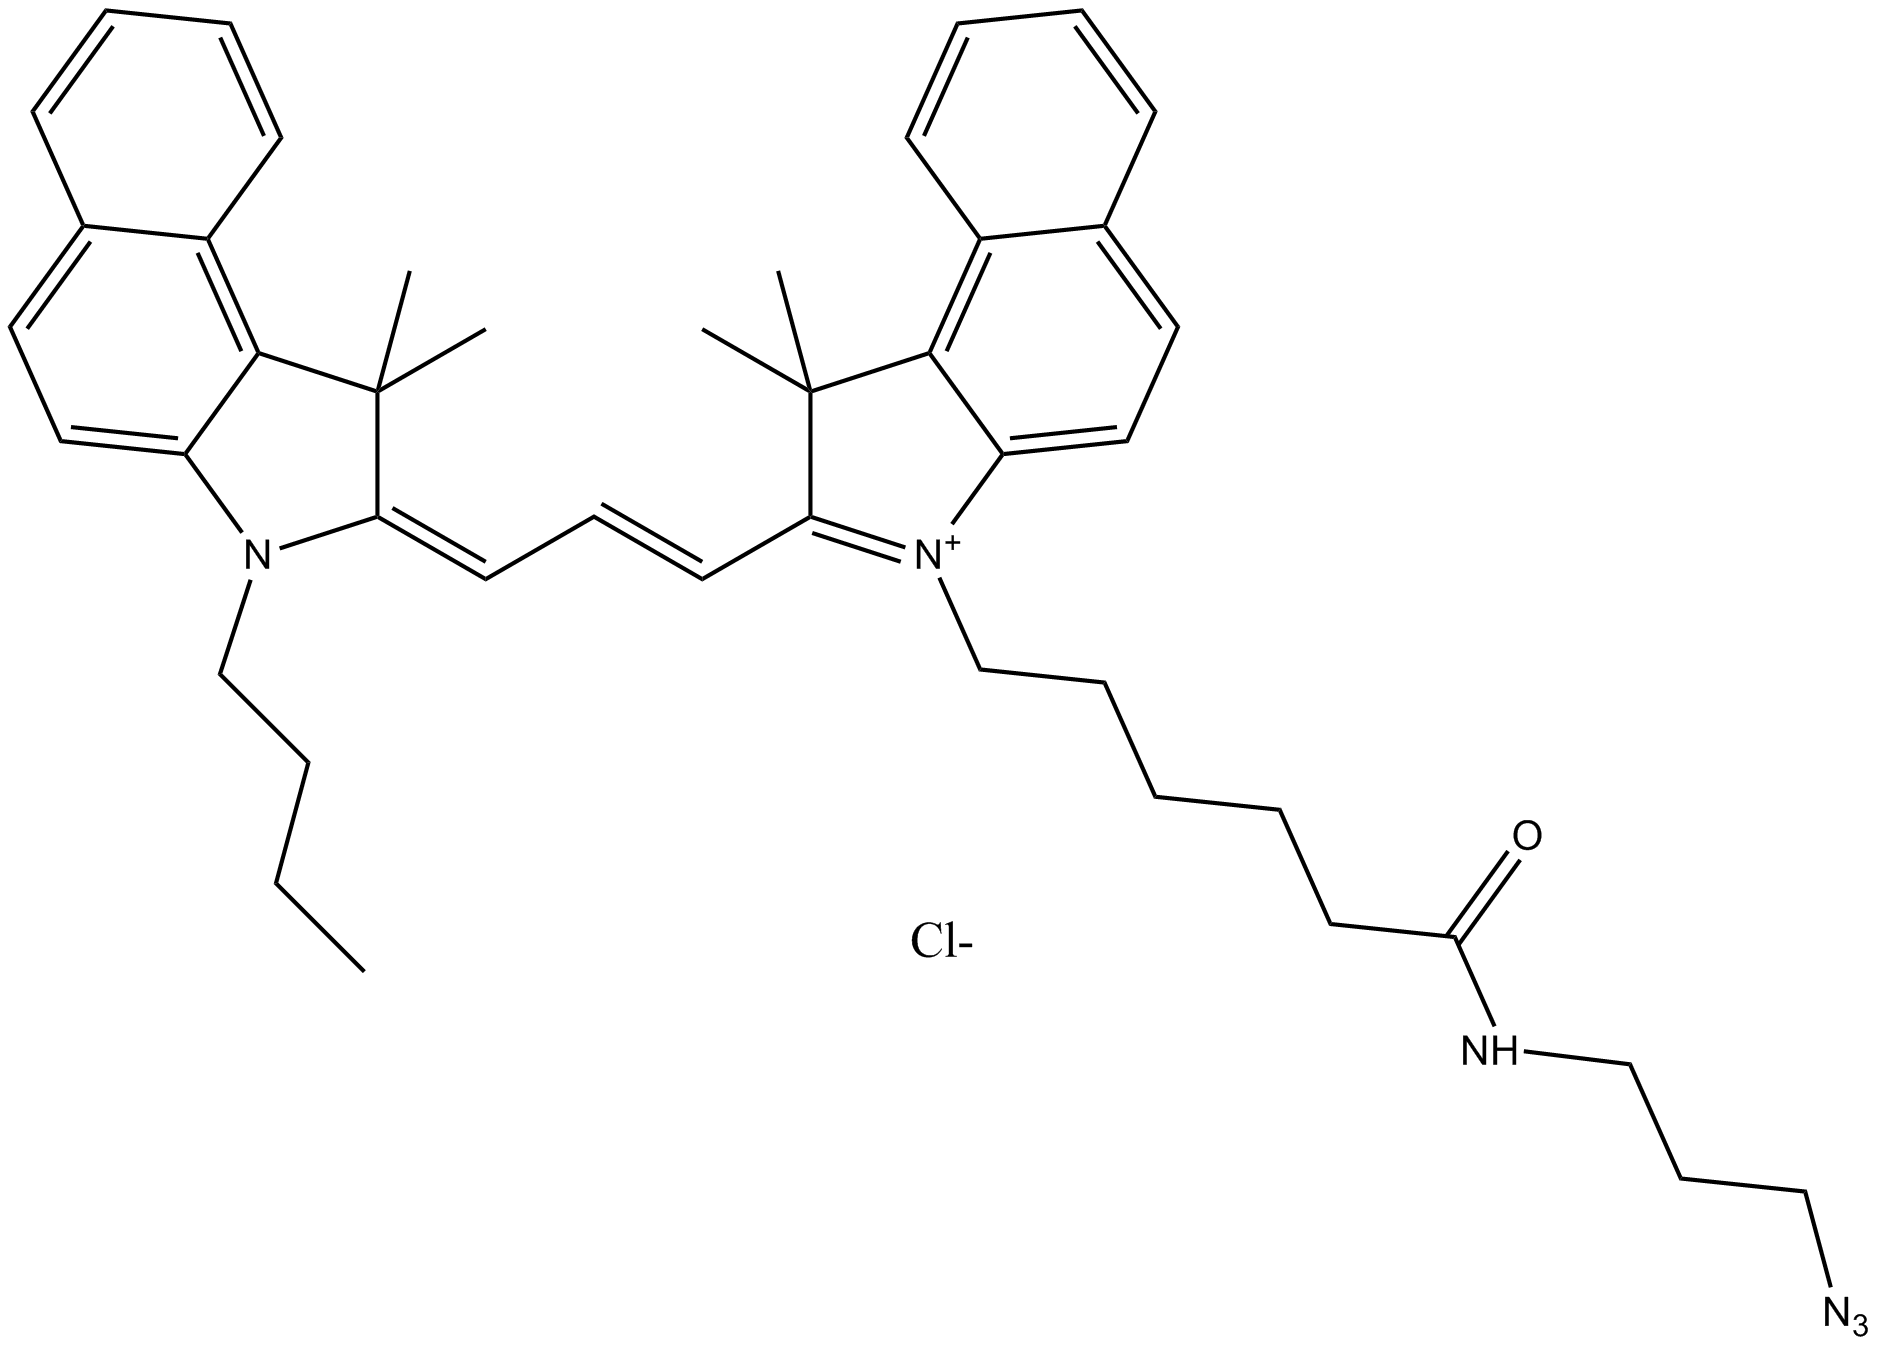 Cy3.5 azide (non-sulfonated)